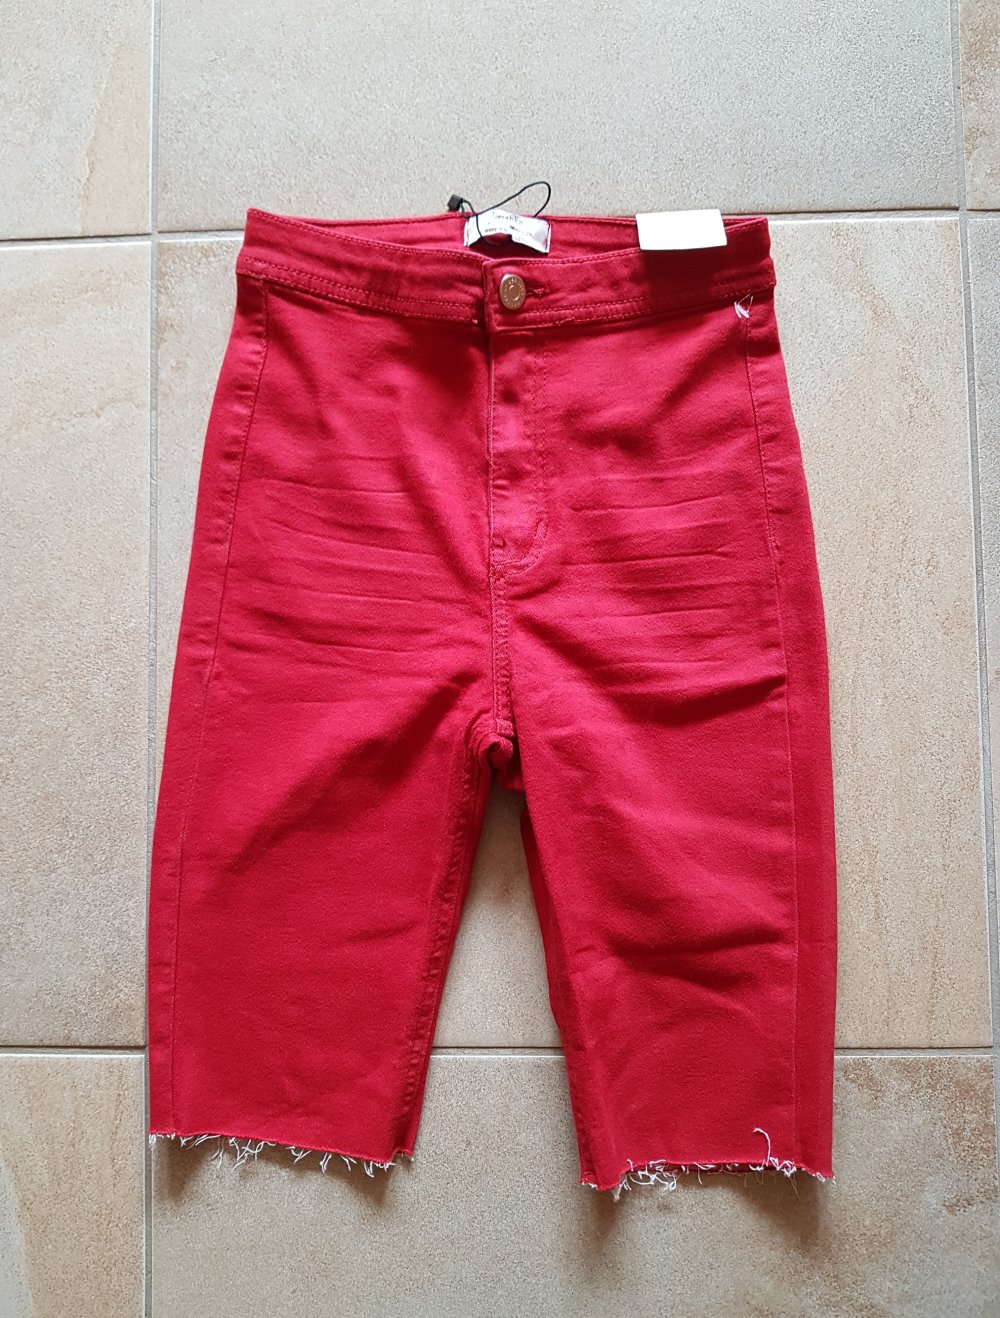 Rote Shorts Radlerhose Highwaist Gr.34 neu